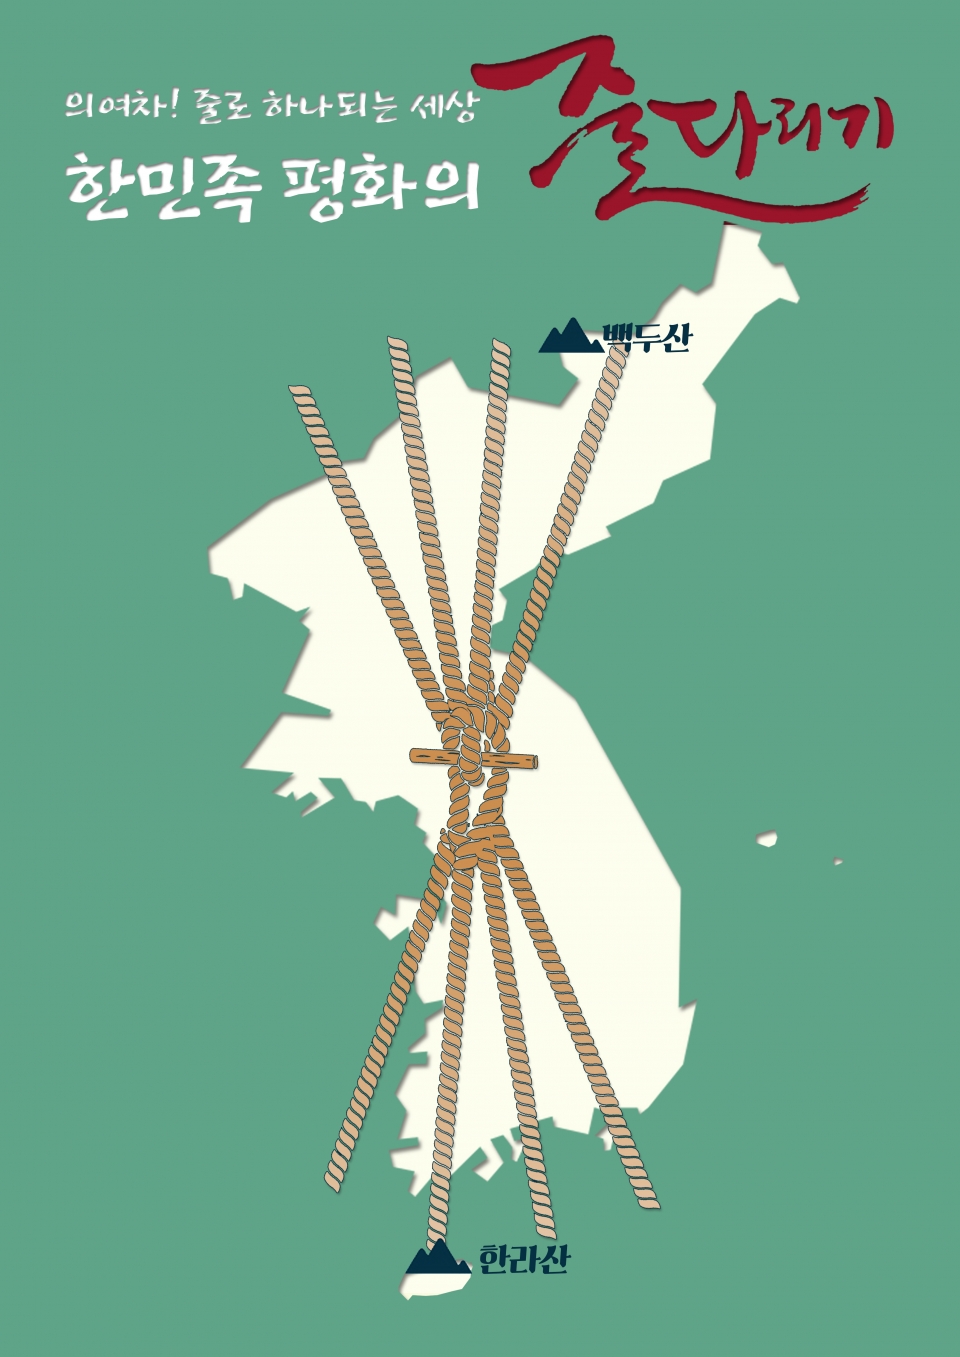 기지시줄다리기와 남북화합 기원(사진제공 당진시)